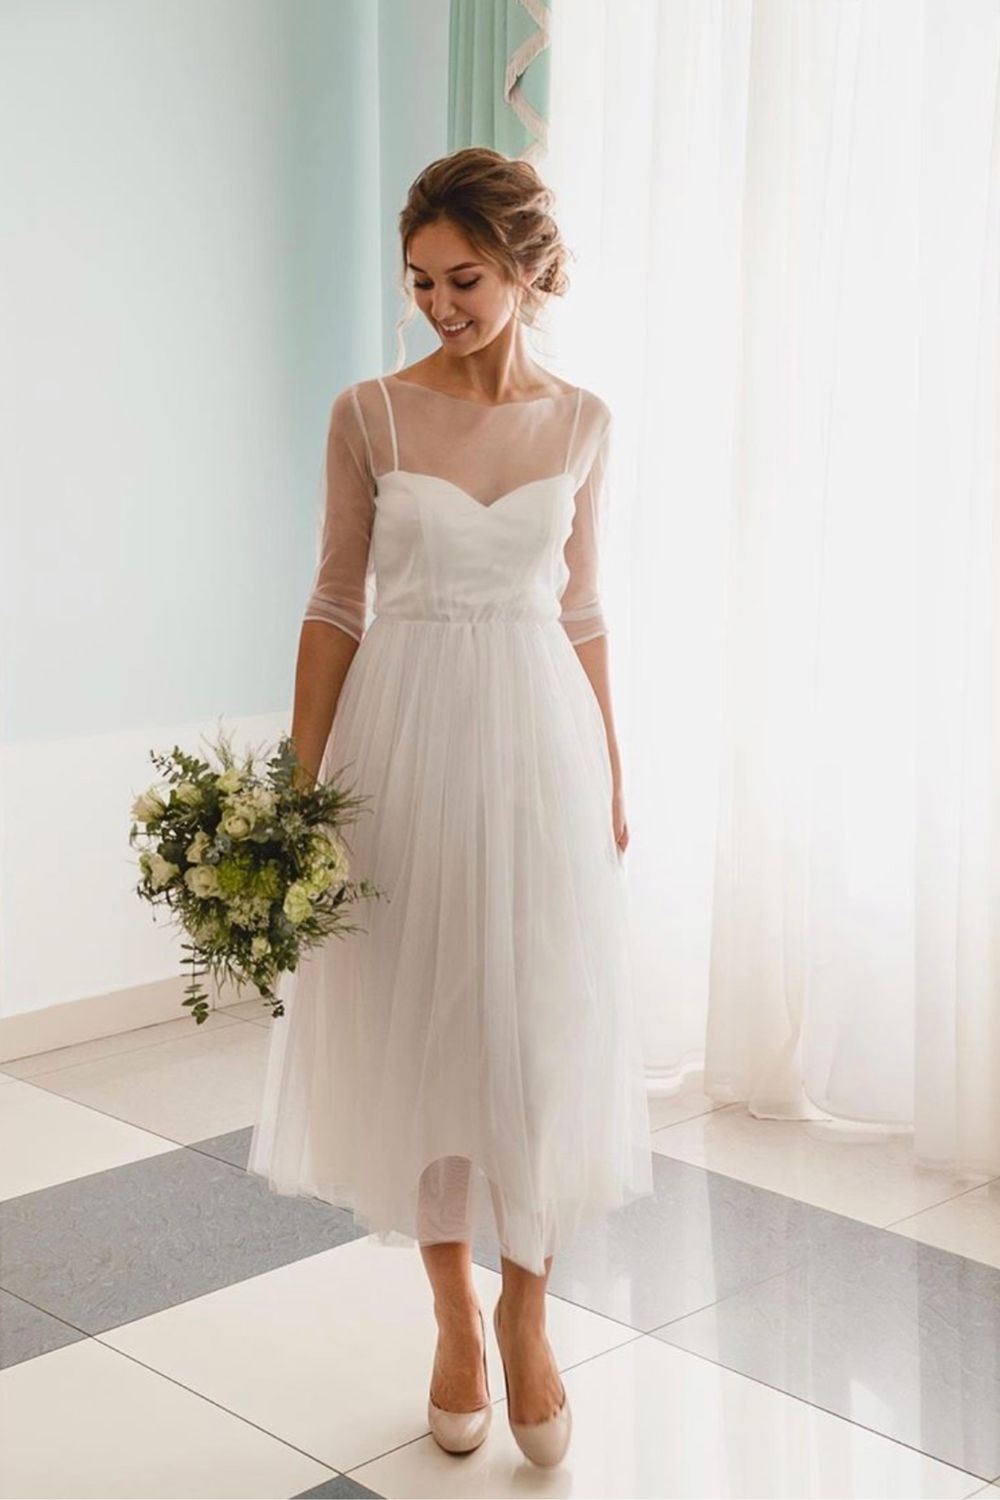 Цветные свадебные платья | Скидки до 70% на не белое свадебное платье в салоне Валенсия (Москва)